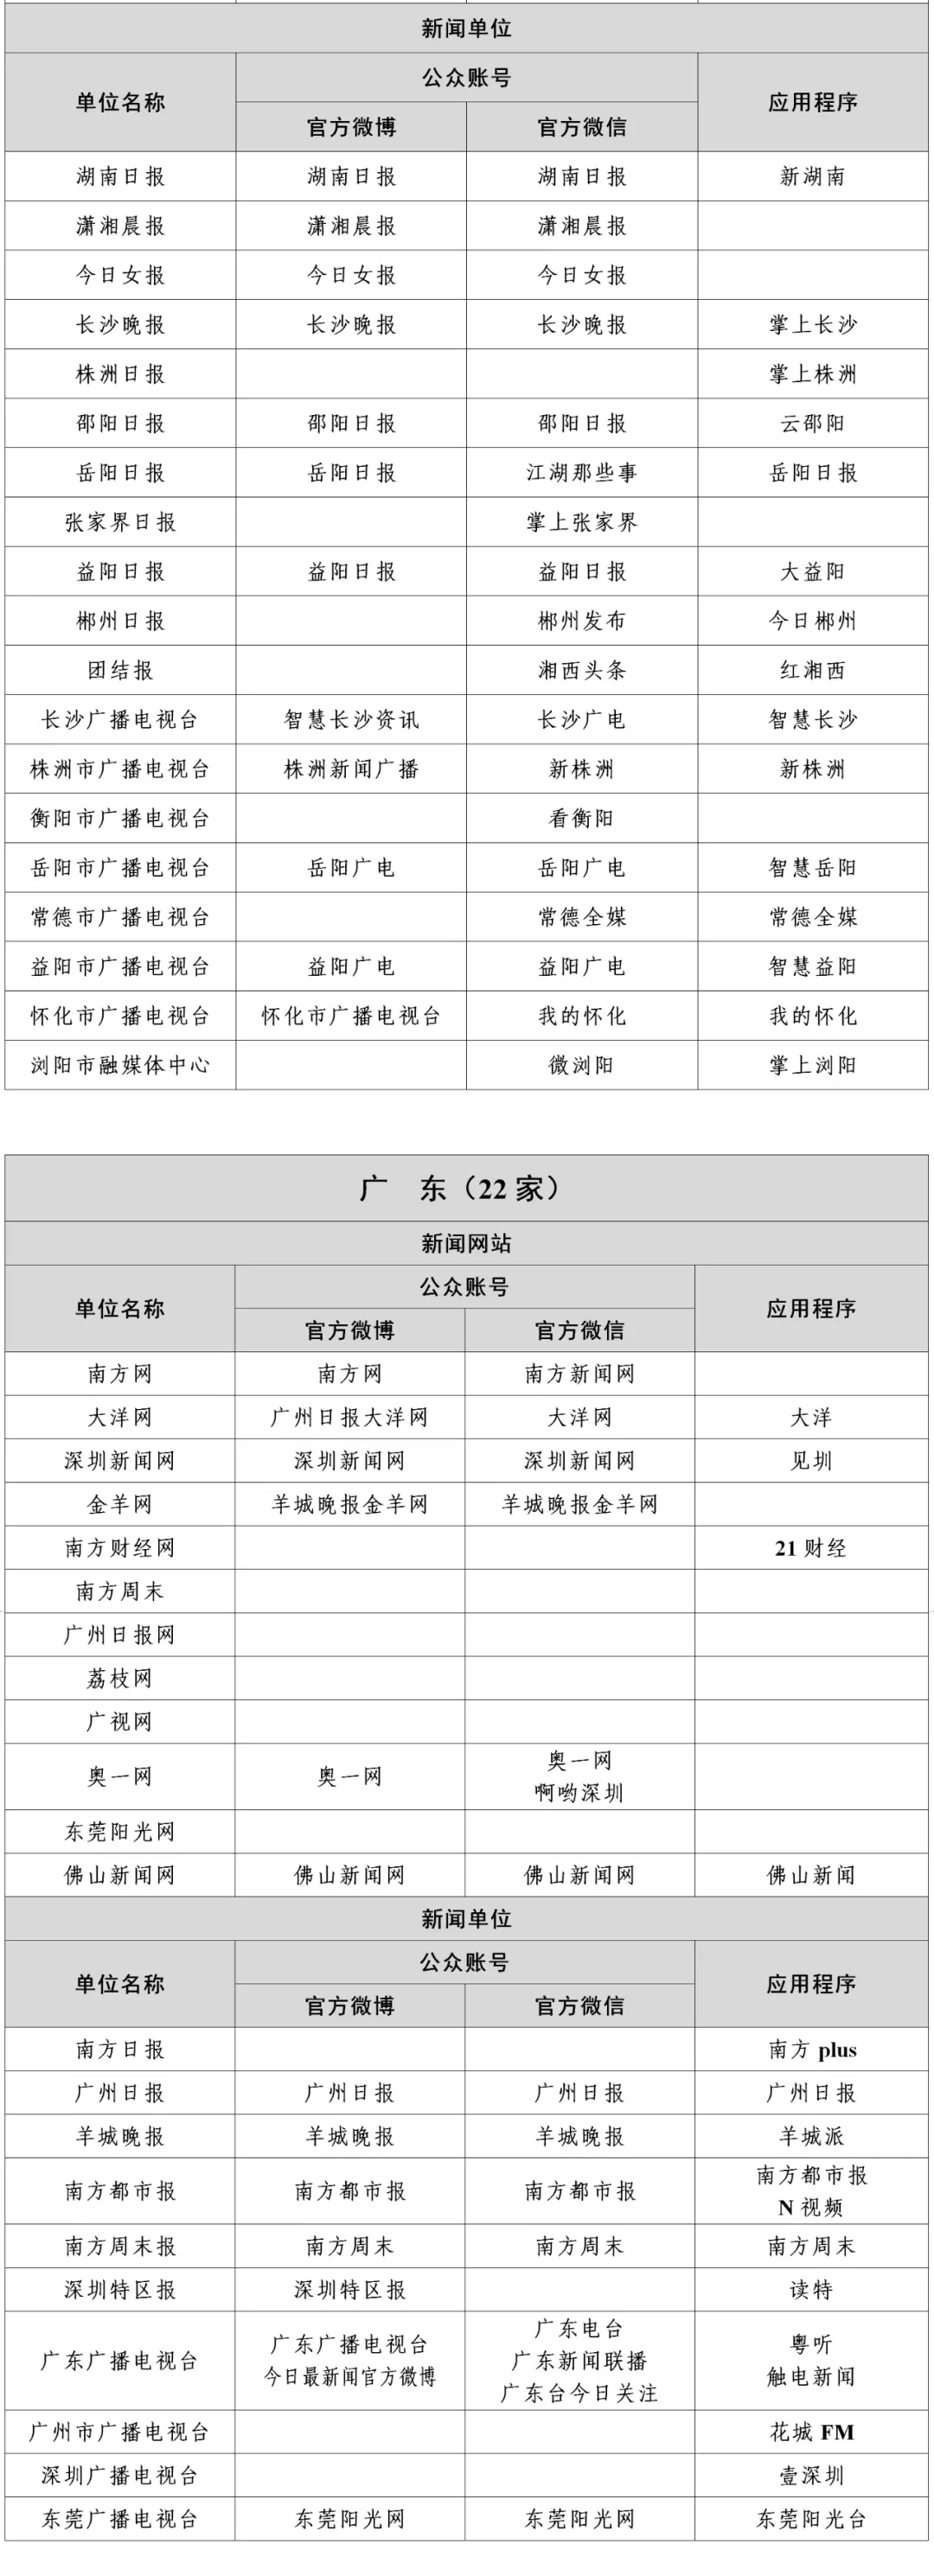 广东新闻信息稿源单位名单